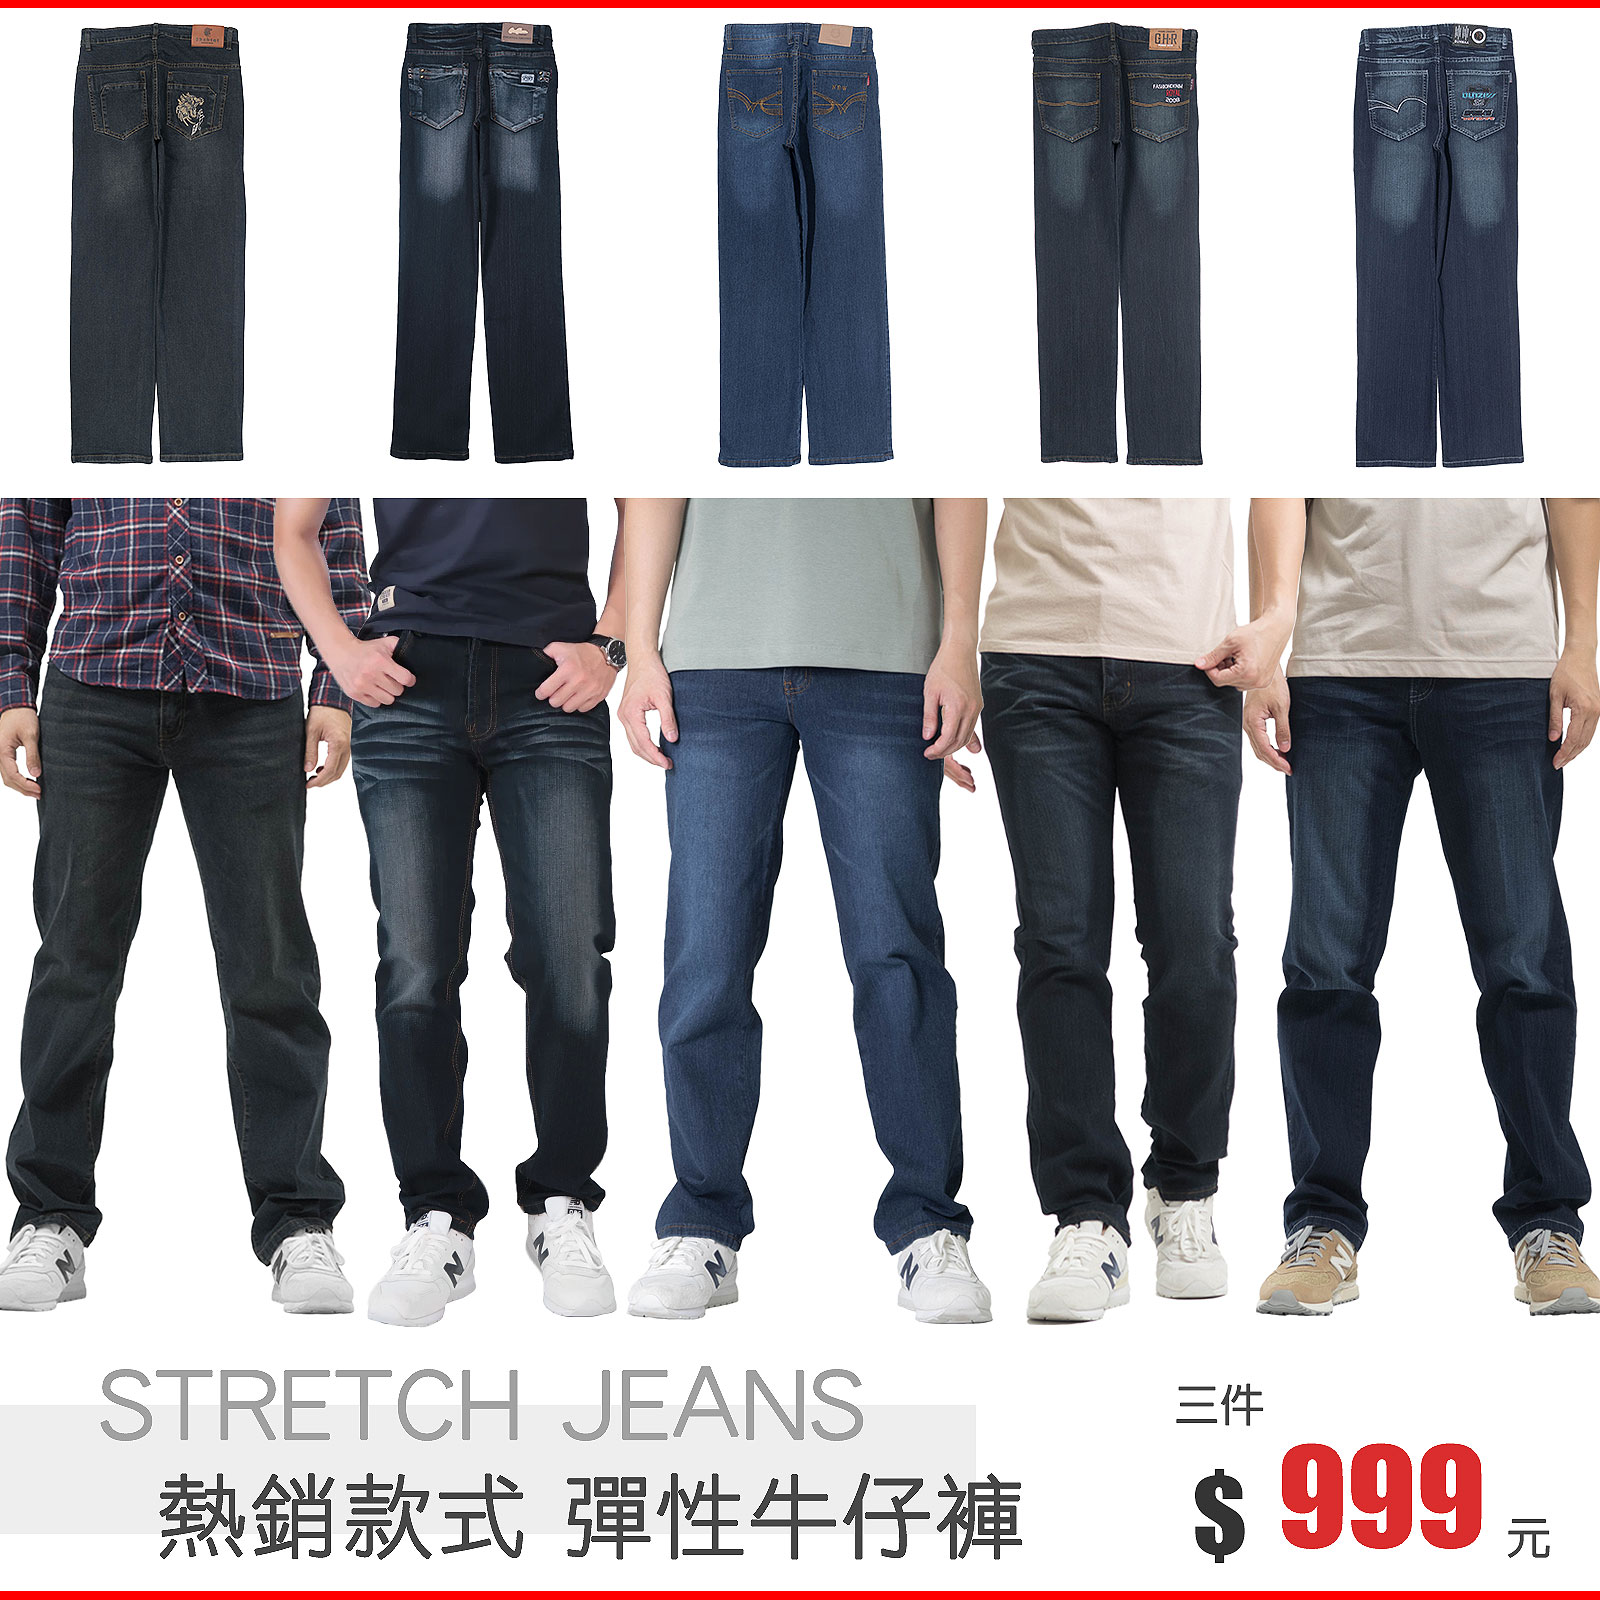 [ 三件999元 ] 中直筒牛仔褲 彈性牛仔長褲 復古牛仔褲 刷白牛仔褲 直筒褲 車繡後口袋刷紋丹寧 Regular Fit Jeans Straight Jeans Stretch Jeans Denim Pants Vintage Jeans (321-5803)深牛仔、(337-2064)、(337-2162)、(347-3106)、(347-3107)、(390-8979) M L XL 2L 3L 4L 5L (腰圍:28~41英吋 / 71~104公分) 男 [實體店面保障] sun-e